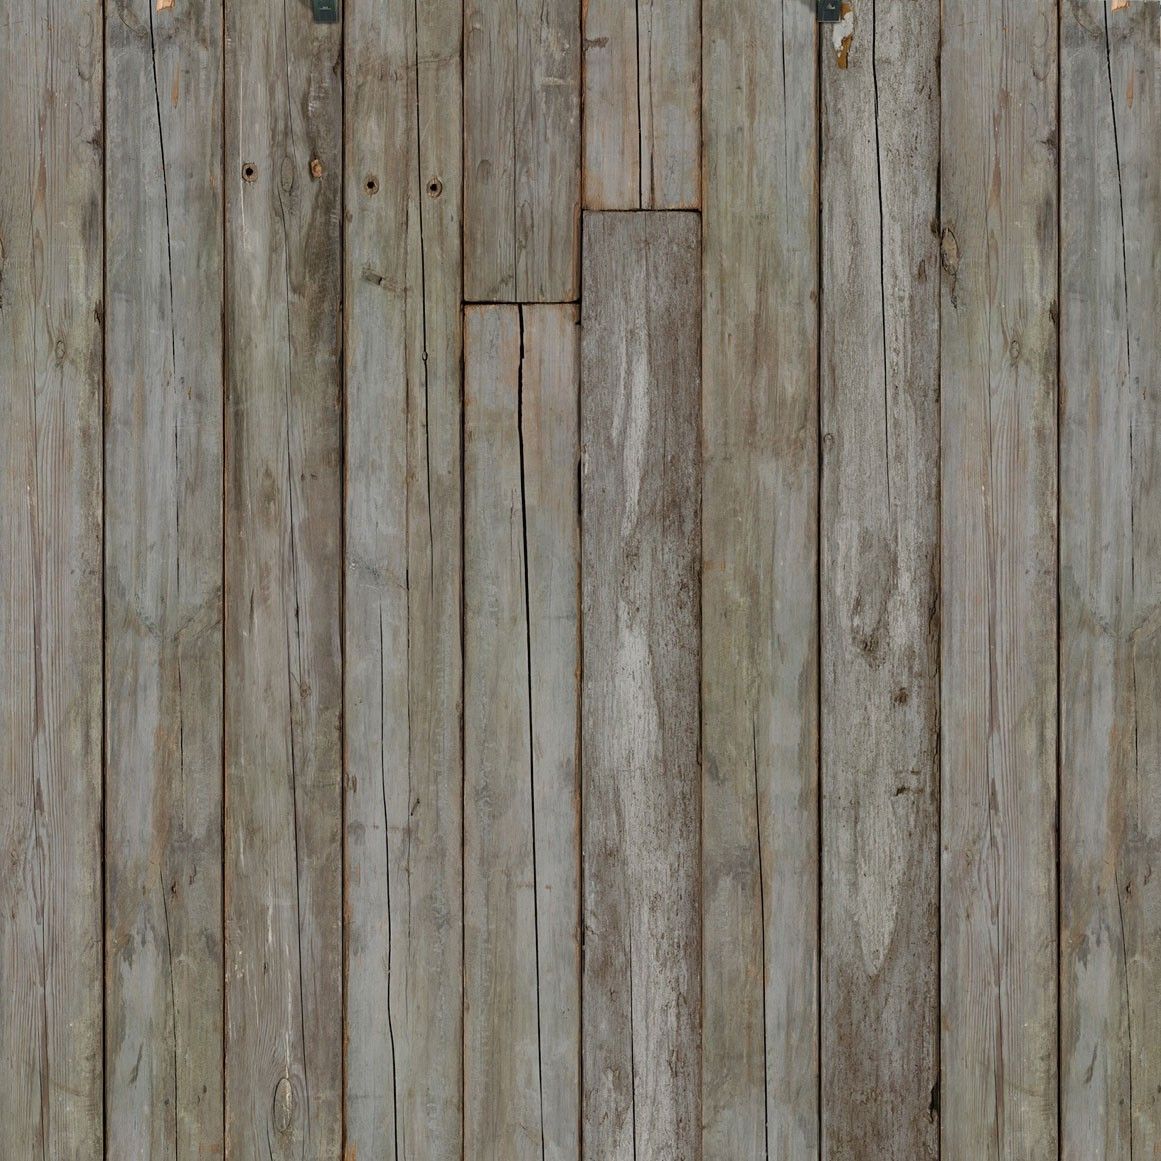 Scrapwood 14 Wallpaper, Rustic Wood Wallpaper, Wood Effect Wallpaper